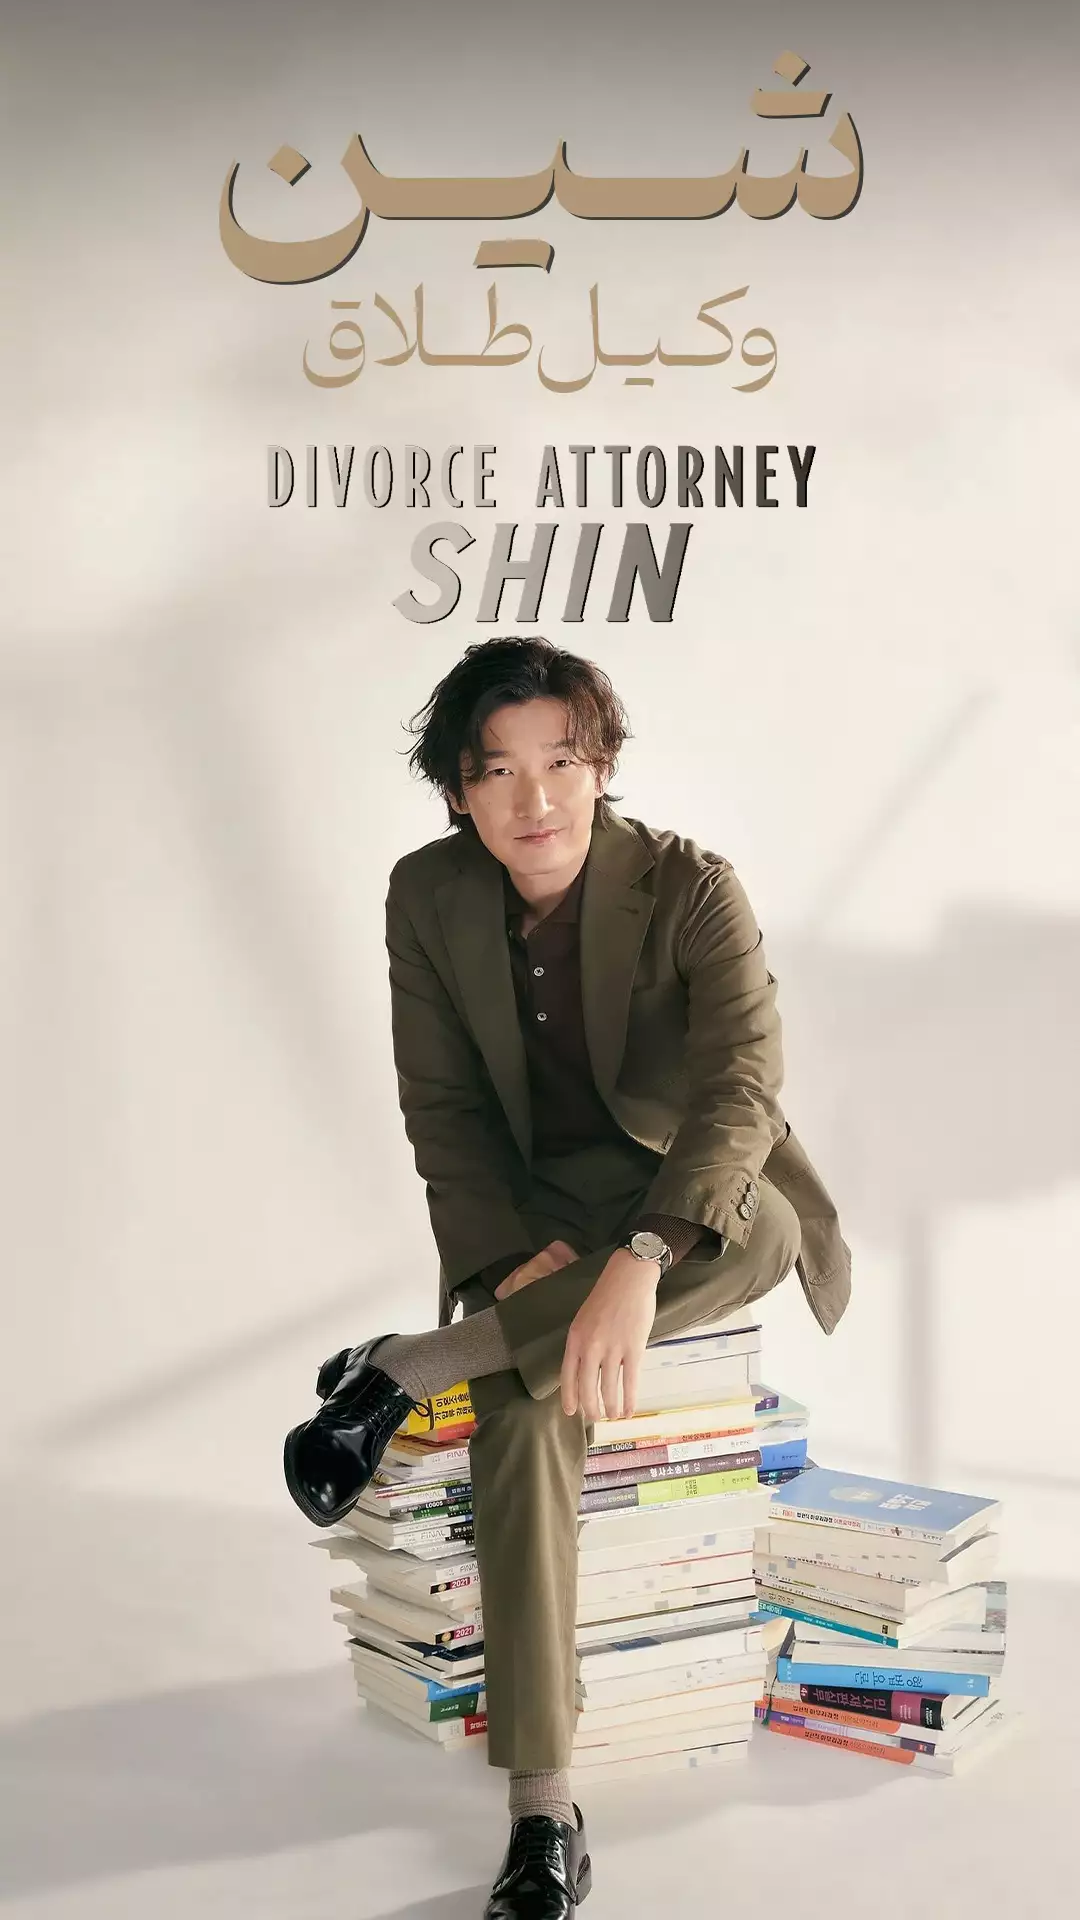 سریال وکیل طلاق شین